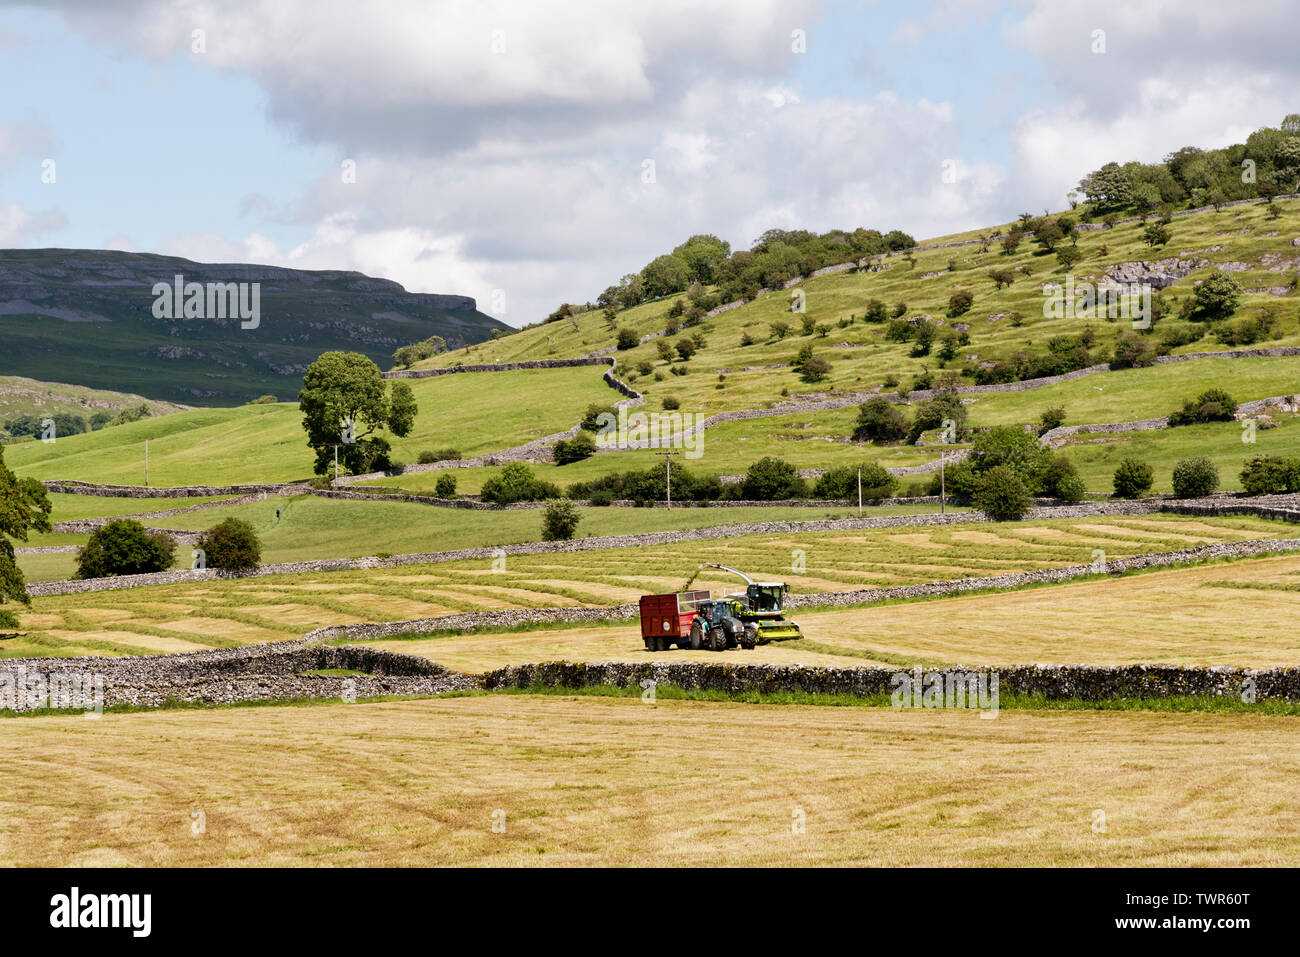 Gli agricoltori di approfittare di un giorno di estate secca meteo per tagliare il fieno dei prati e raccogliere l'erba per insilati, Austwick, North Yorkshire. Foto Stock